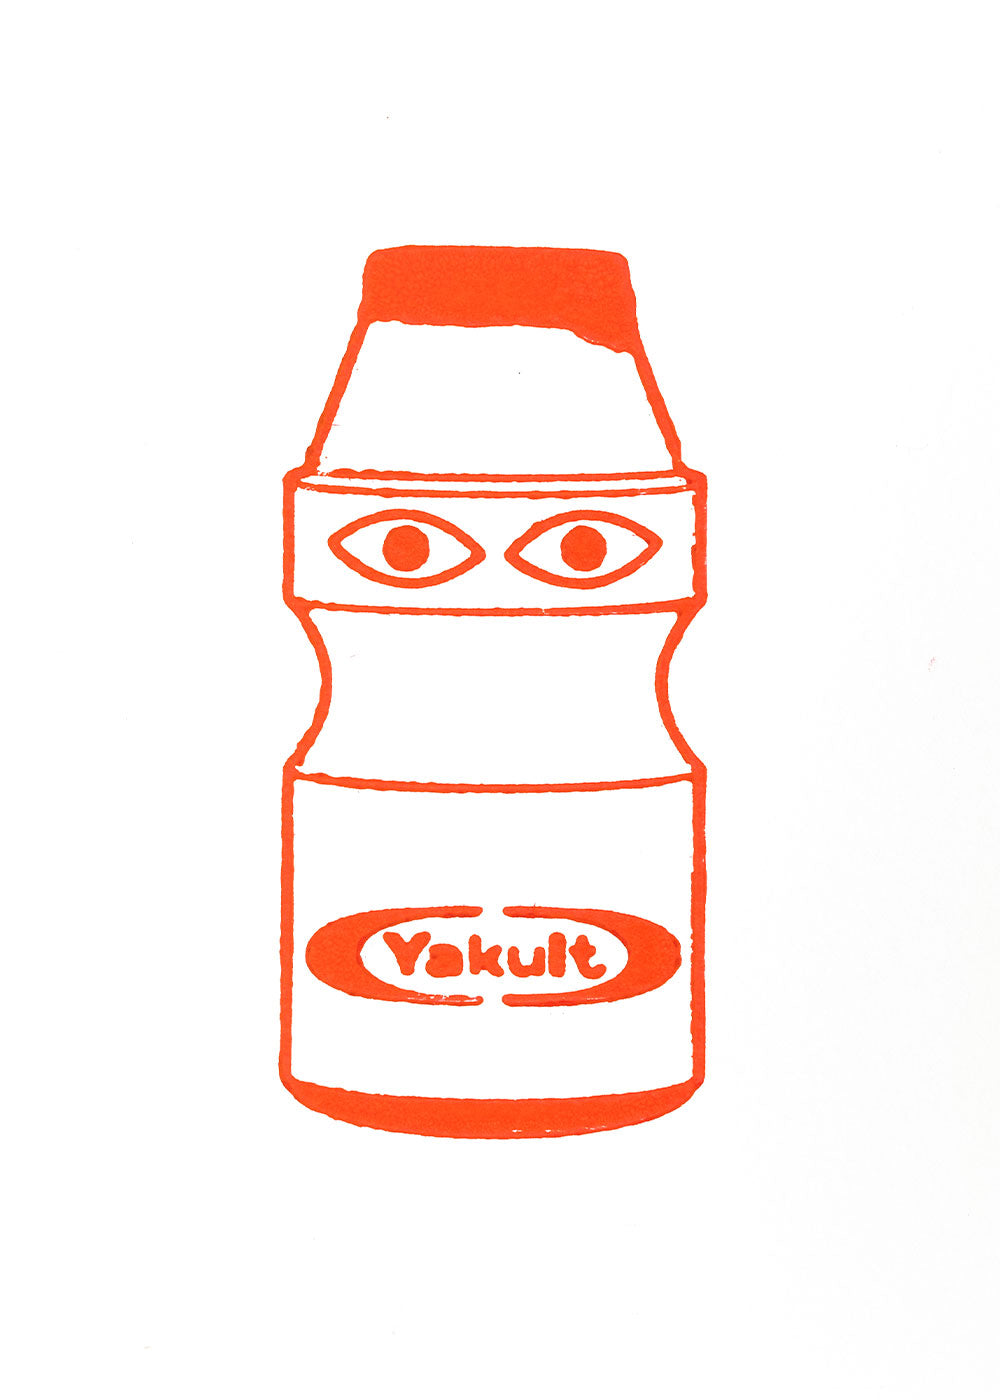 TADASHI, "Untitled" (Yakult)